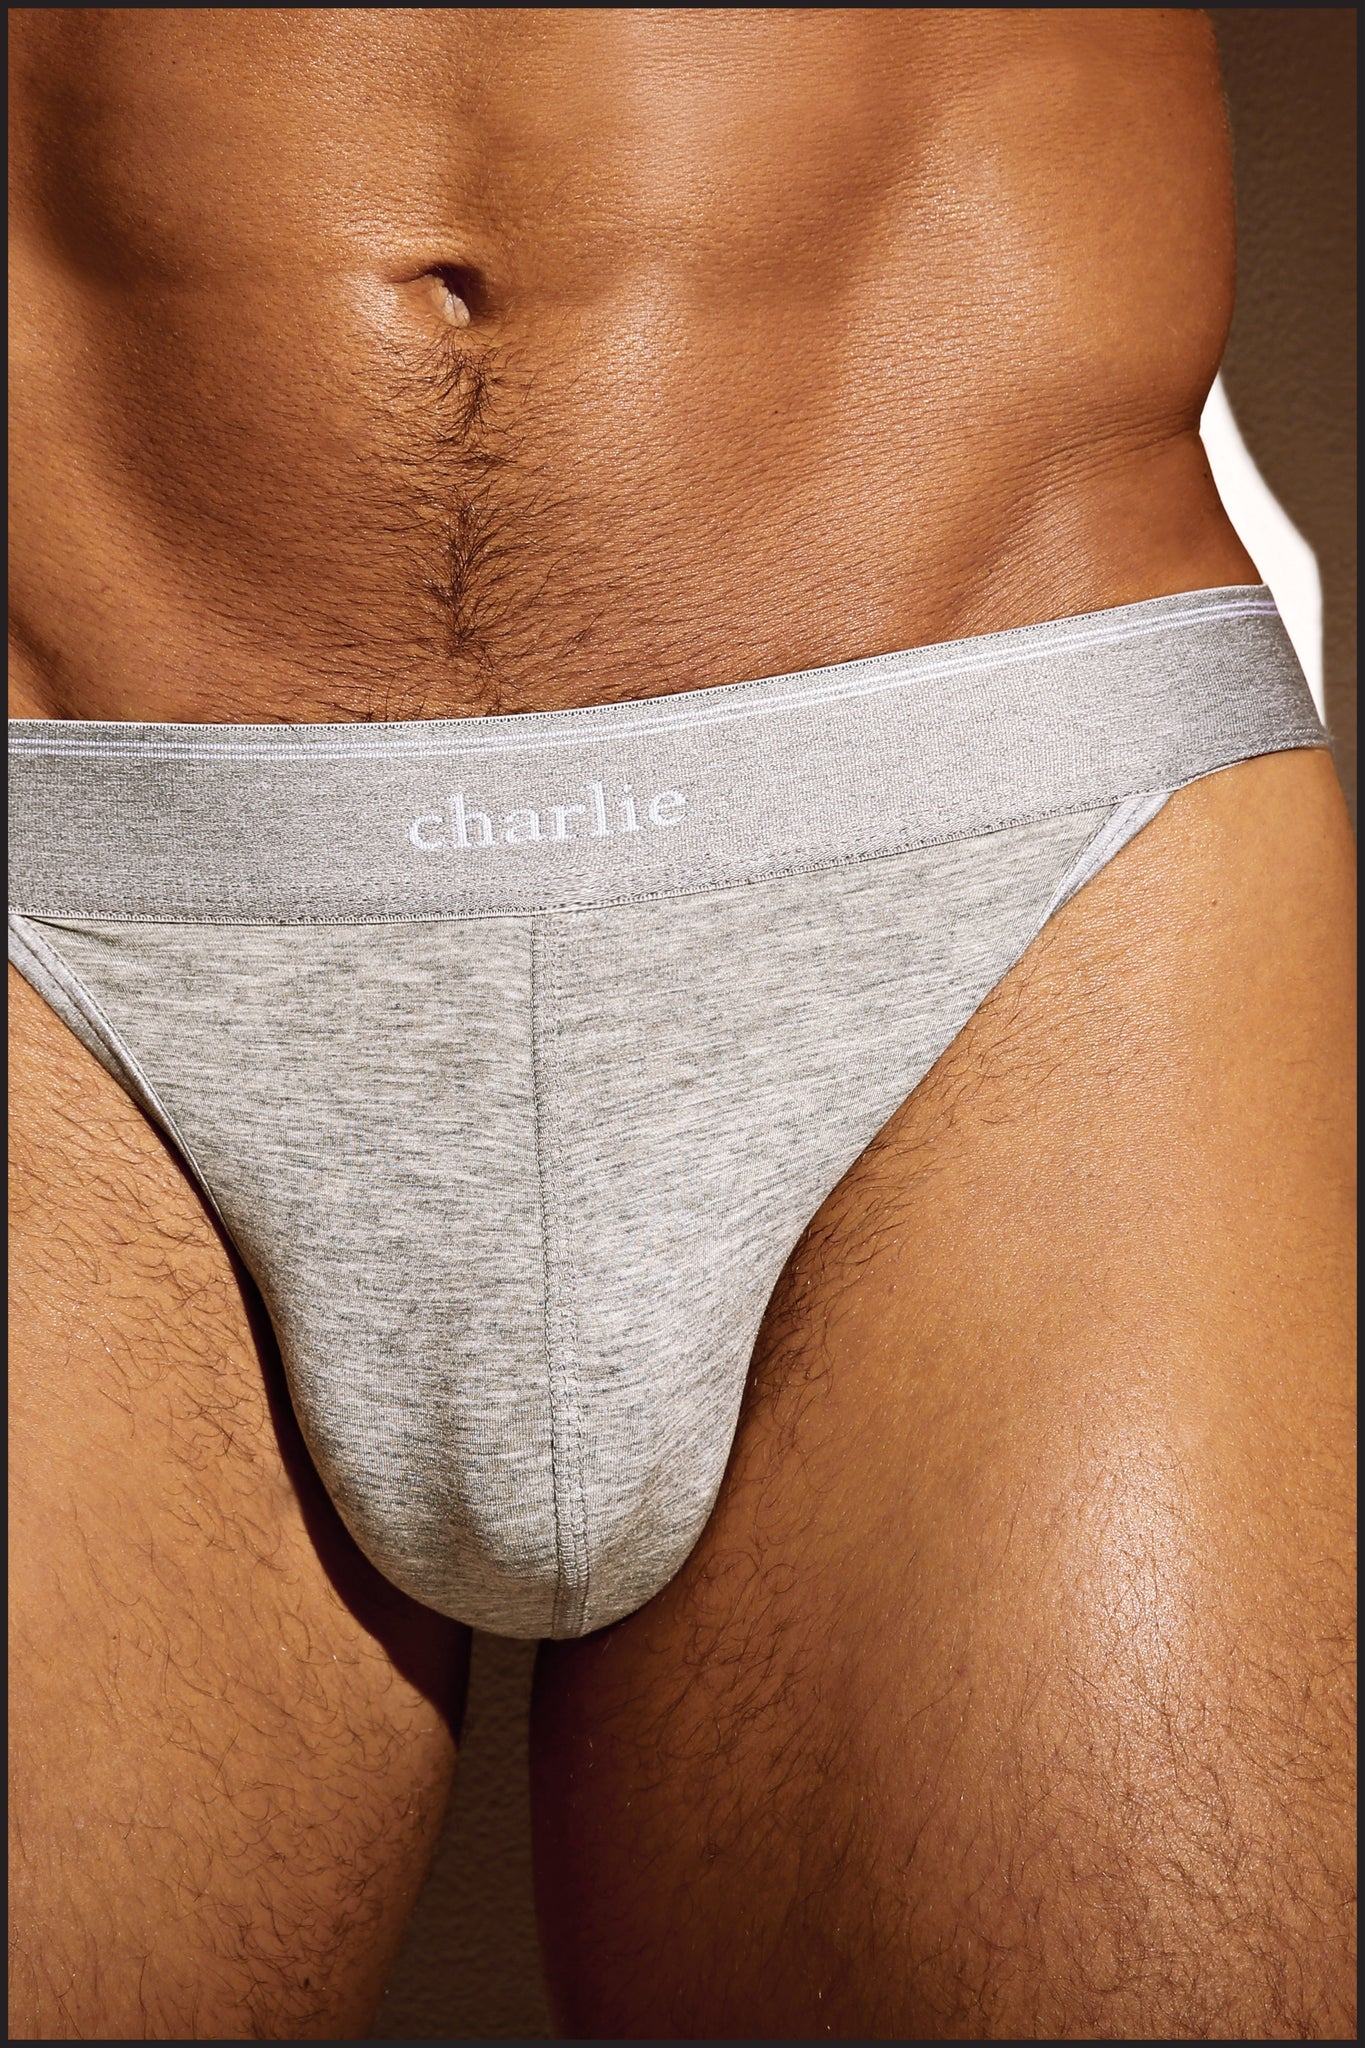 Charlie by Matthew Zink Fitness Underwear Sport Brief